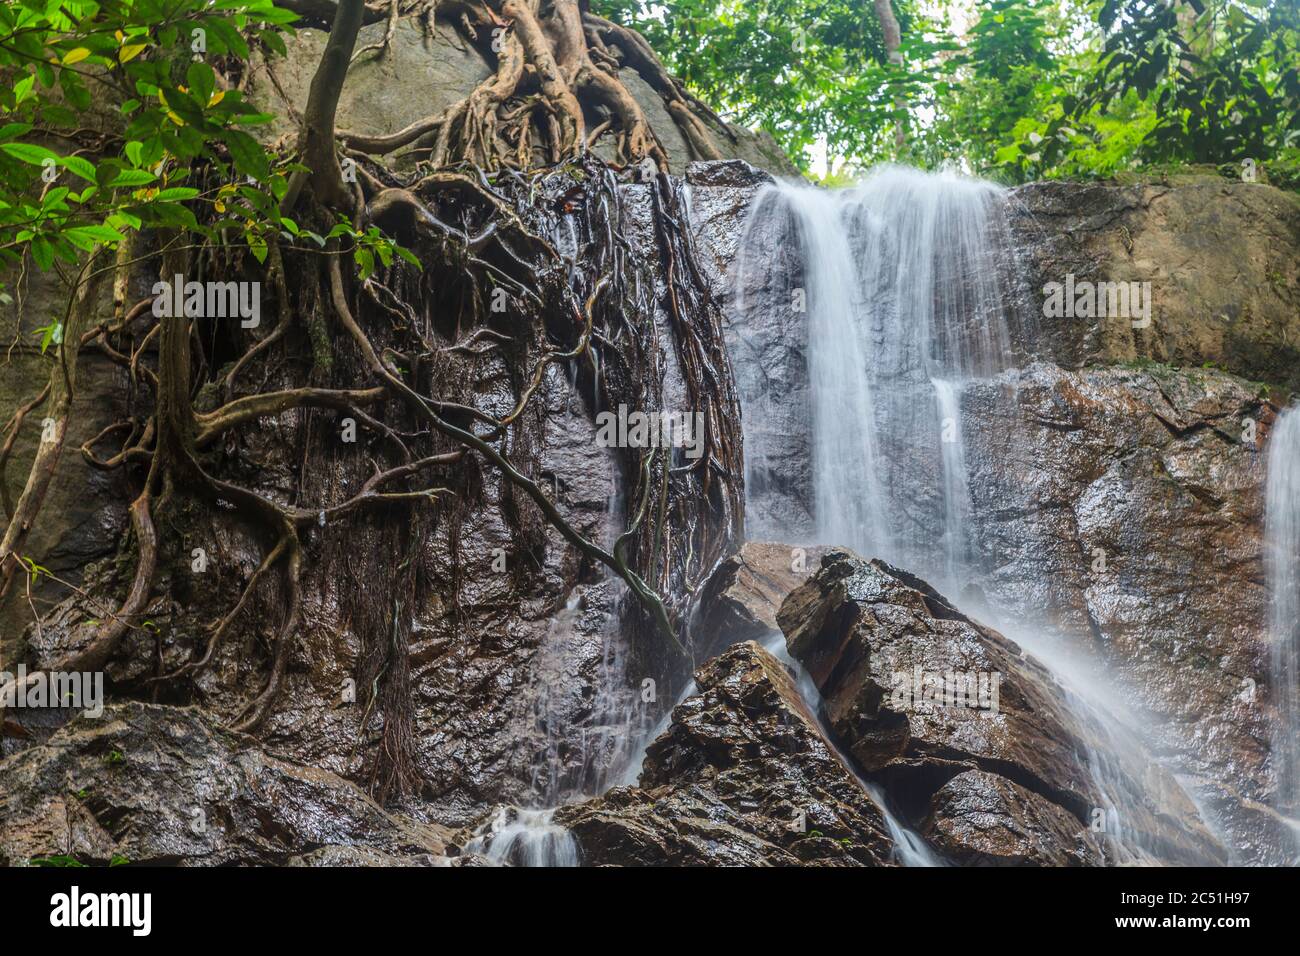 Foto eines Wasserfalls im Nationalpark Krau in Malaysia, fotografiert tagsüber mit einer langen Belichtungszeit im November 2013 Stockfoto